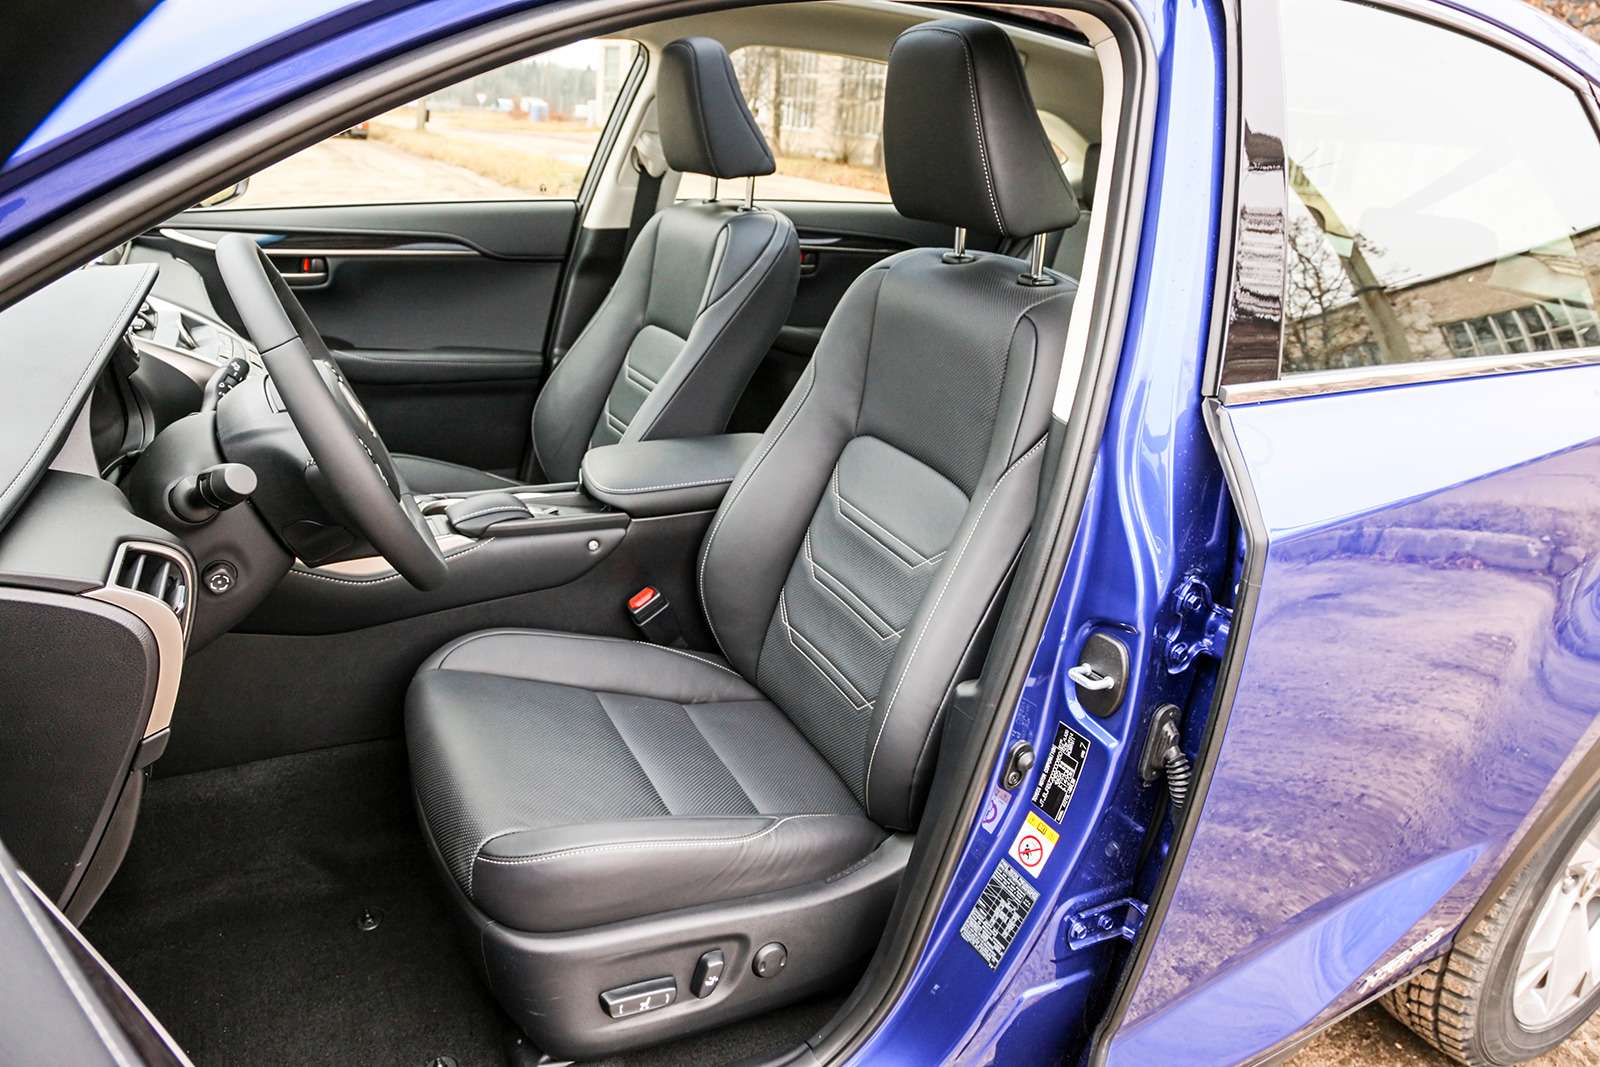 Безупречный профиль подушки и спинки, обогрев, вентиляция, функция памяти: водительское кресло NX 300h великолепно и понравится водителям любого роста и комплекции.